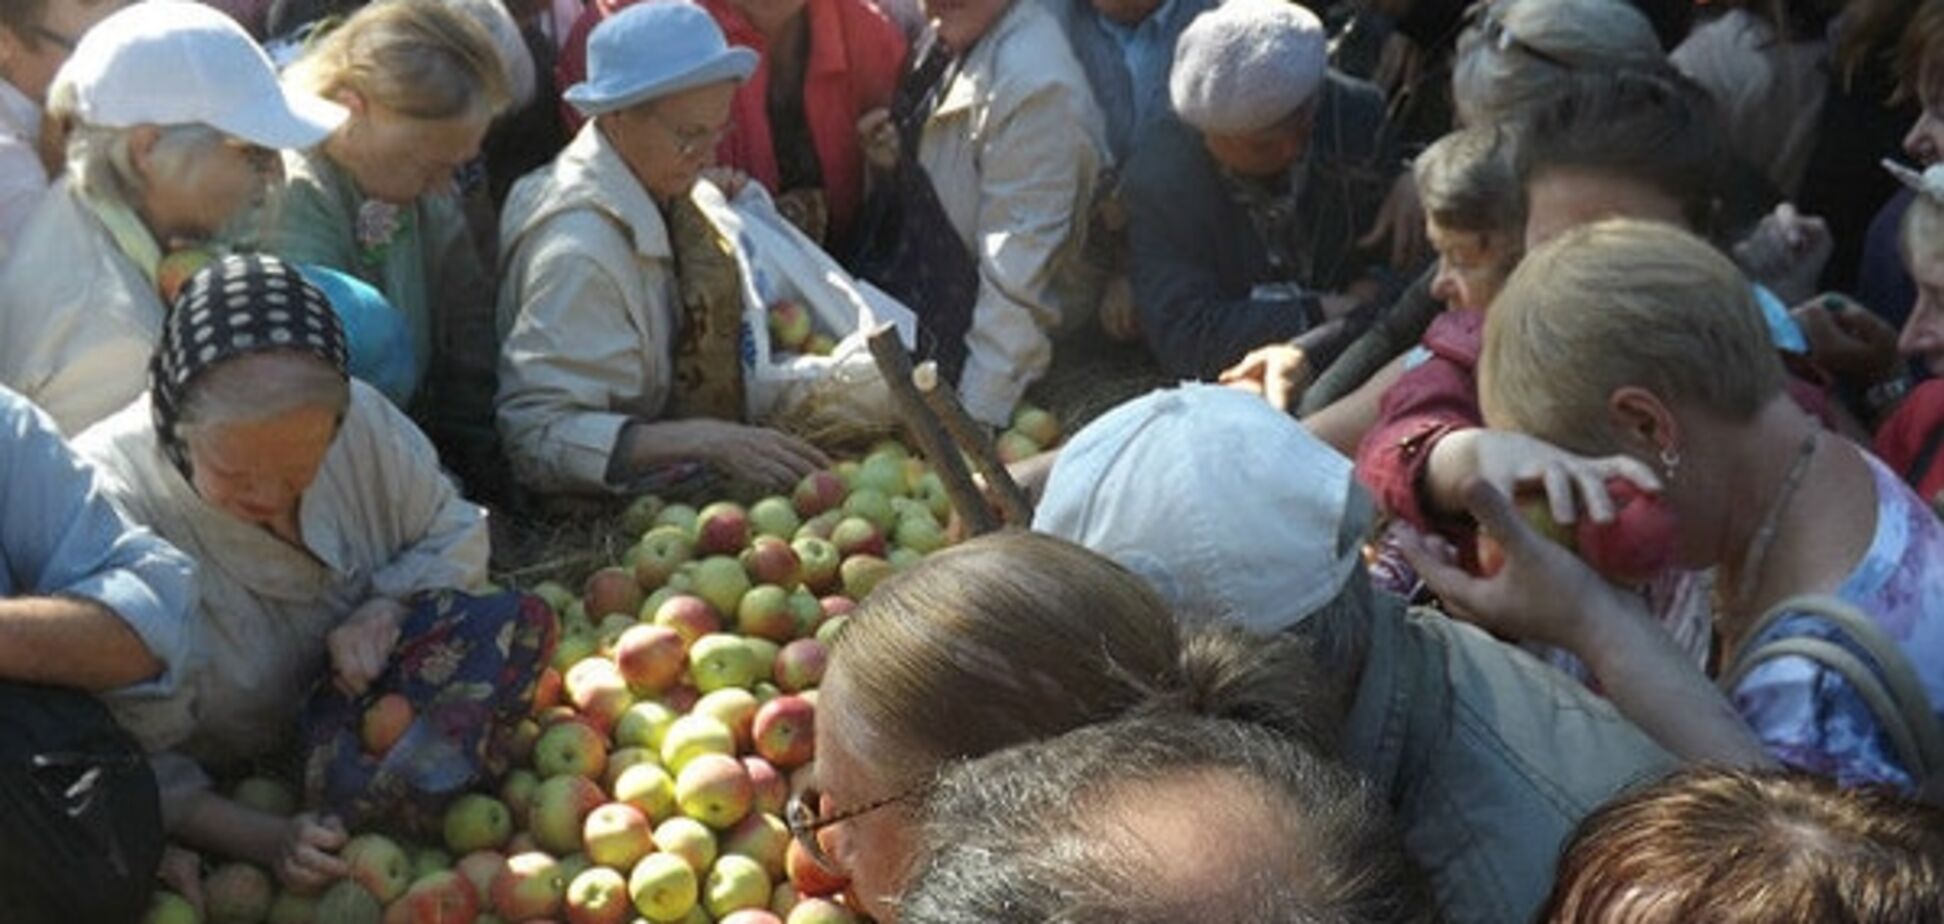 Яблочный спас 'по-питерски': горожане разобрали 2 тонны фруктов за 15 минут